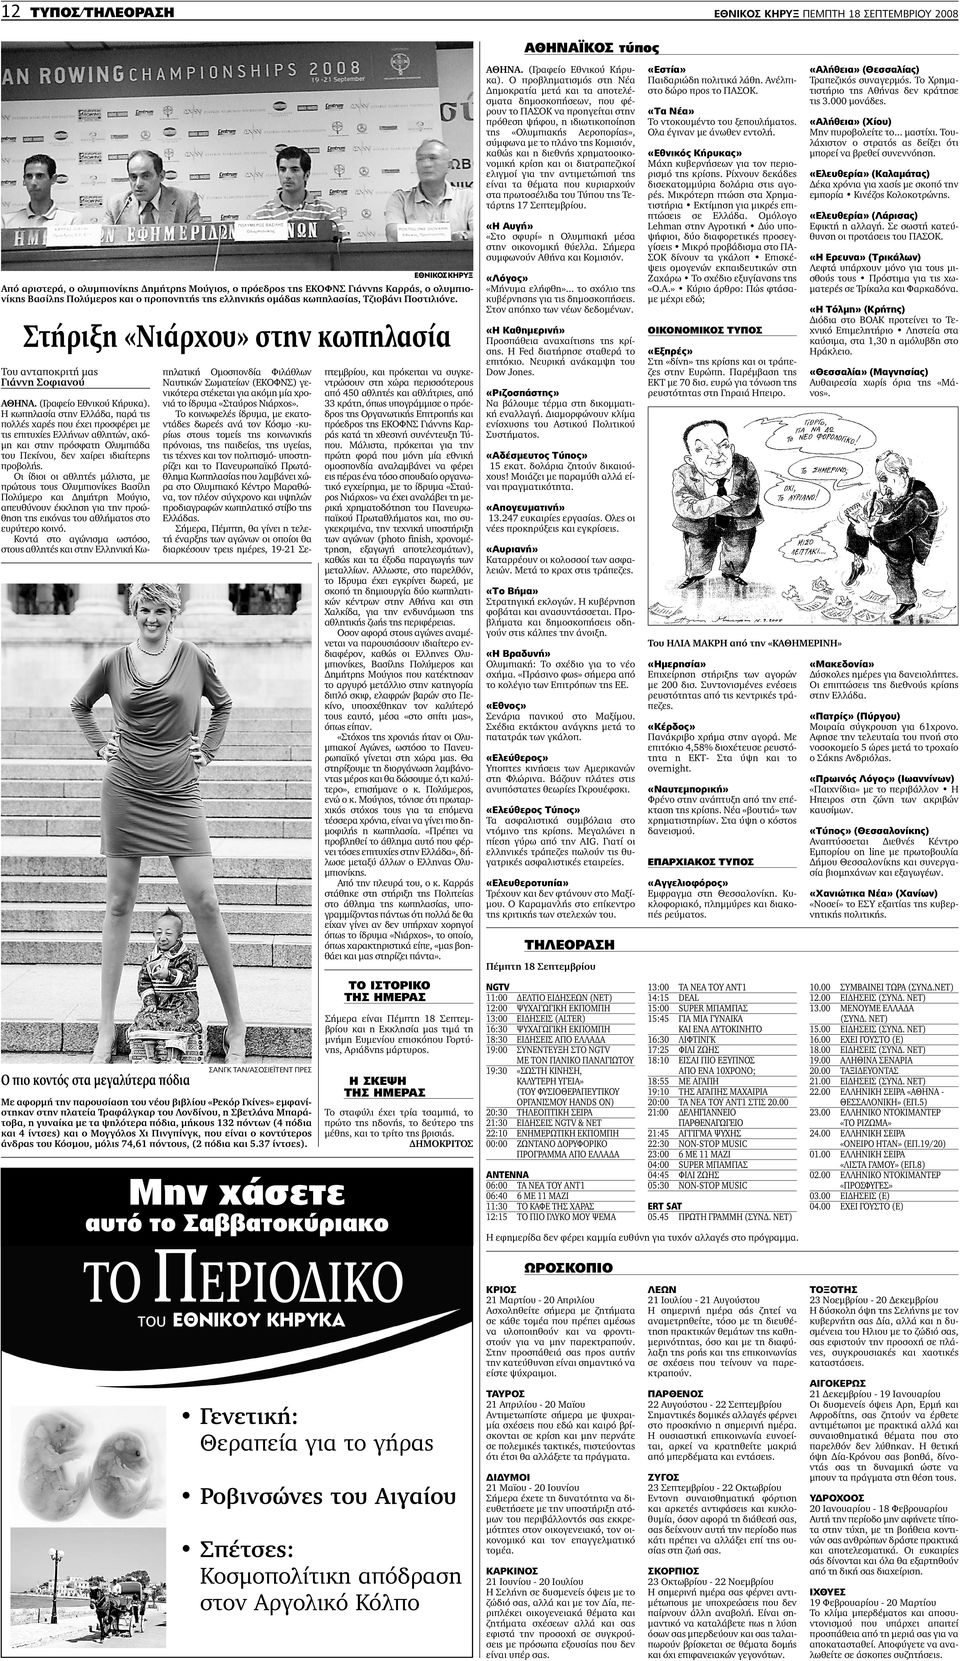 Στήριξη «Νιάρχου» στην κωπηλασία Η κωπηλασία στην Ελλάδα, παρά τις πολλές χαρές που έχει προσφέρει µε τις επιτυχίες Ελλήνων αθλητών, ακό- µη και στην πρόσφατη Ολυµπιάδα του Πεκίνου, δεν χαίρει